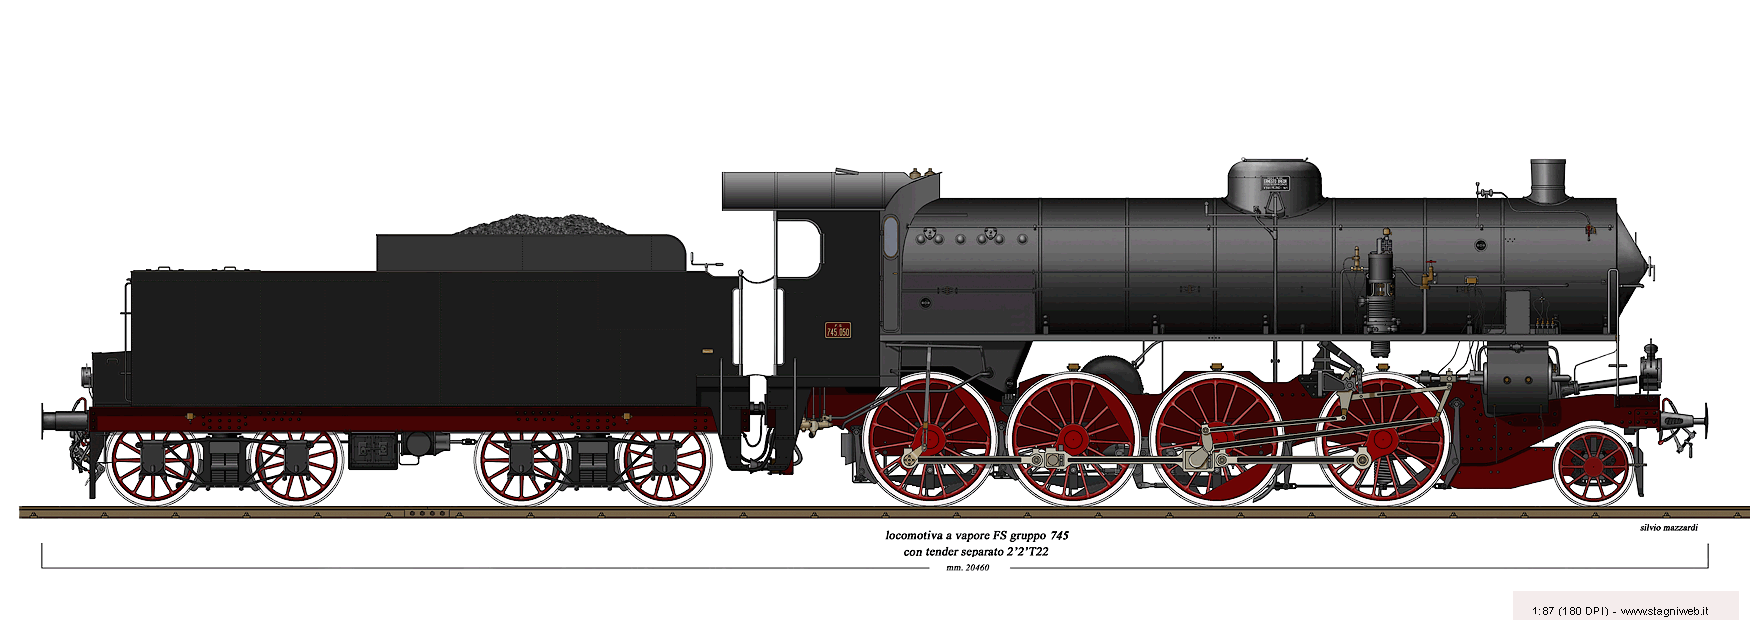 Locomotive a vapore con tender separato - Gr. 745